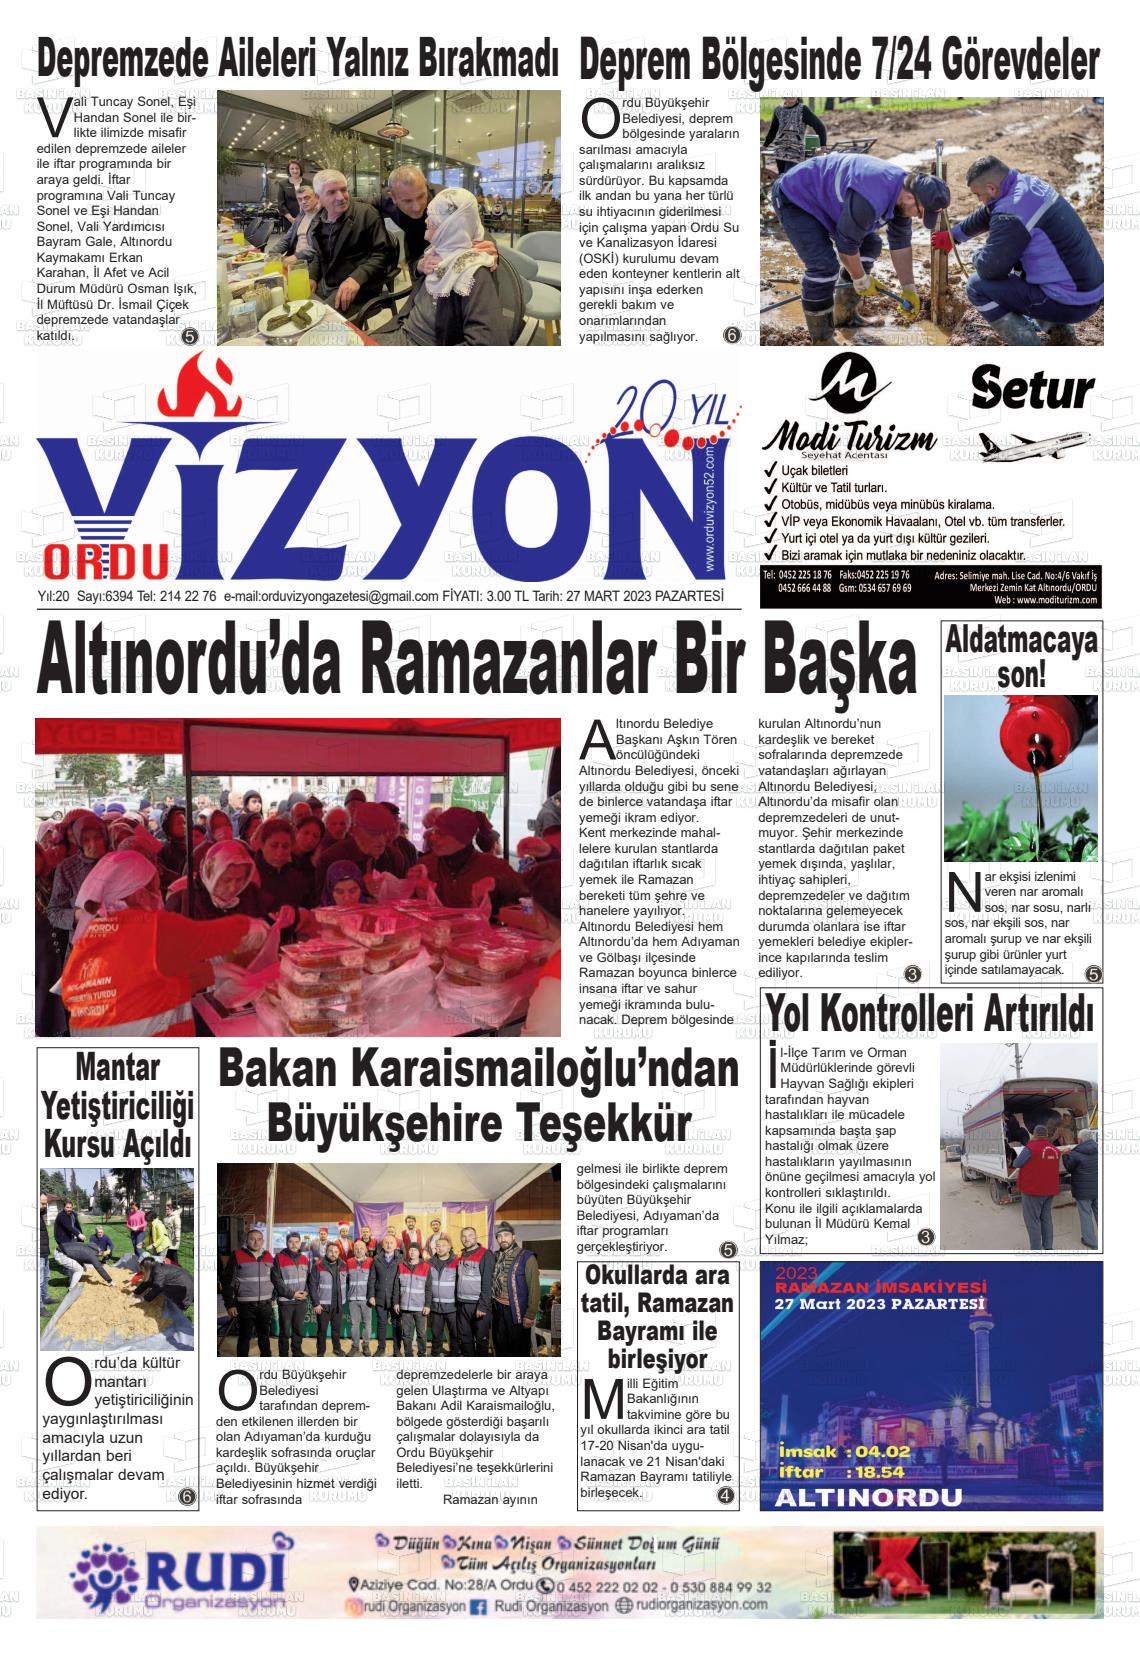 27 Mart 2023 Ordu Vizyon Gazete Manşeti